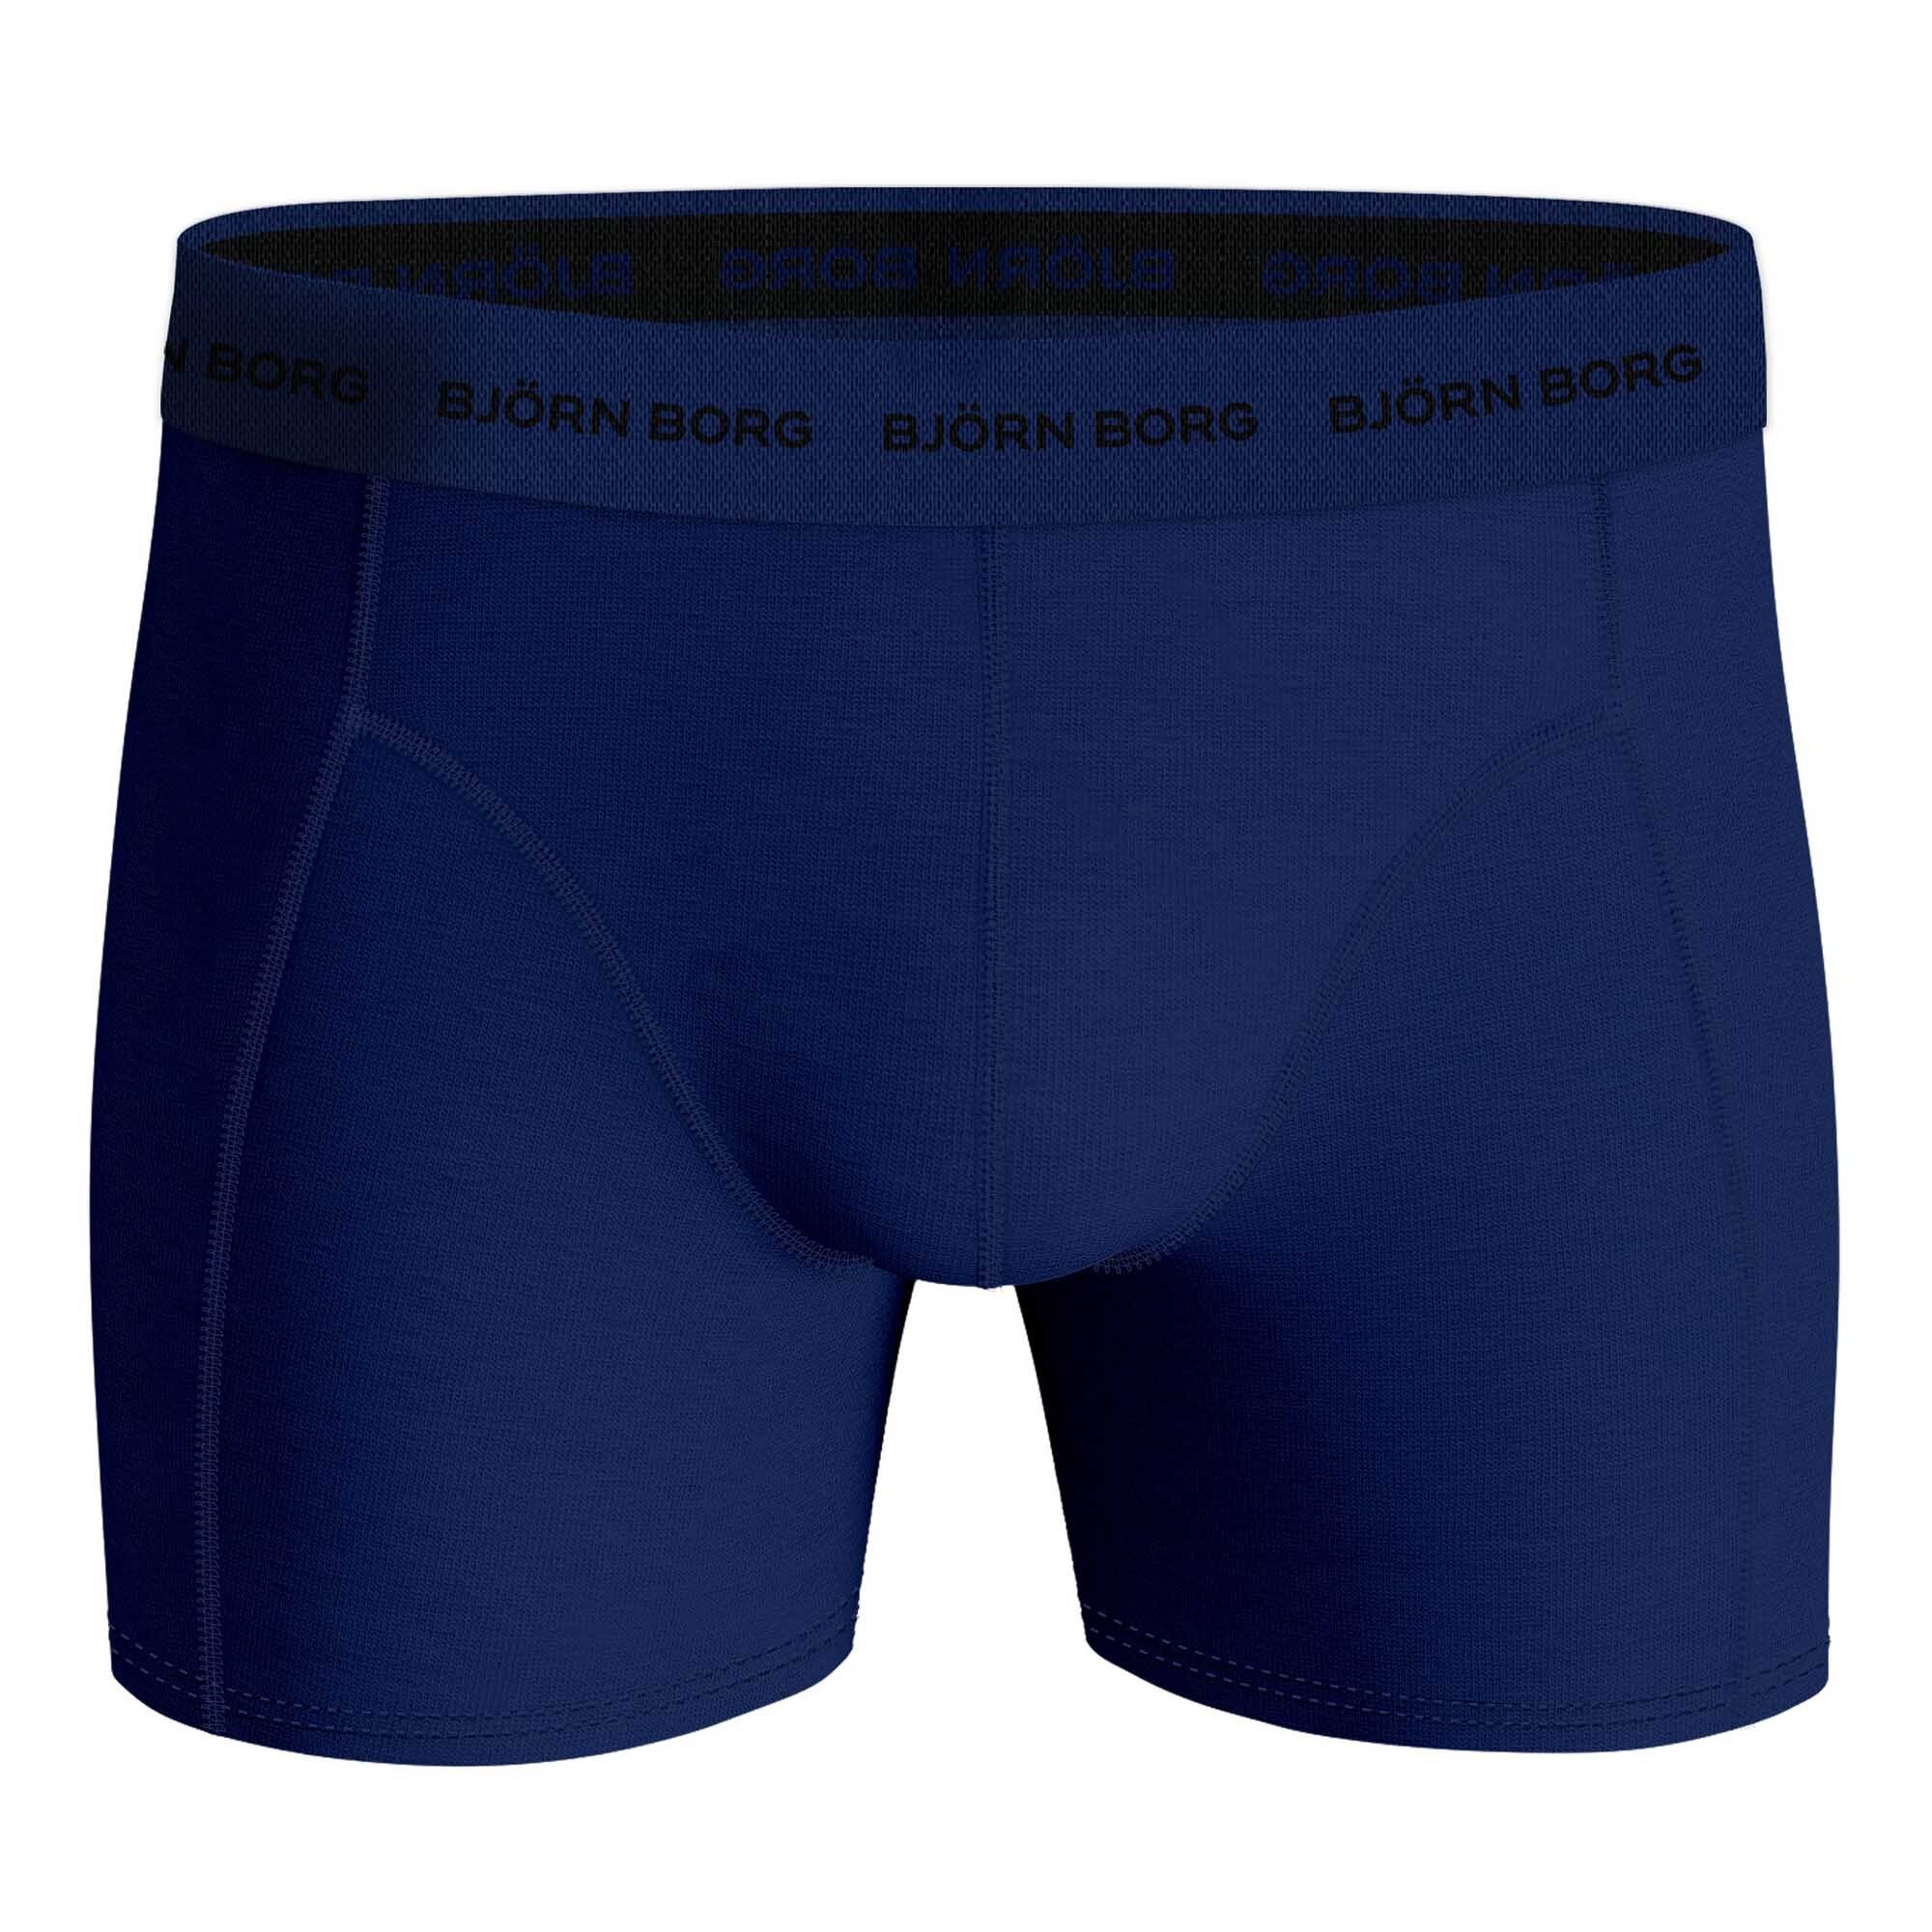 Björn Borg Boxer Herren Boxershorts Cotton - 5er Blau/Grün Stretch Pack